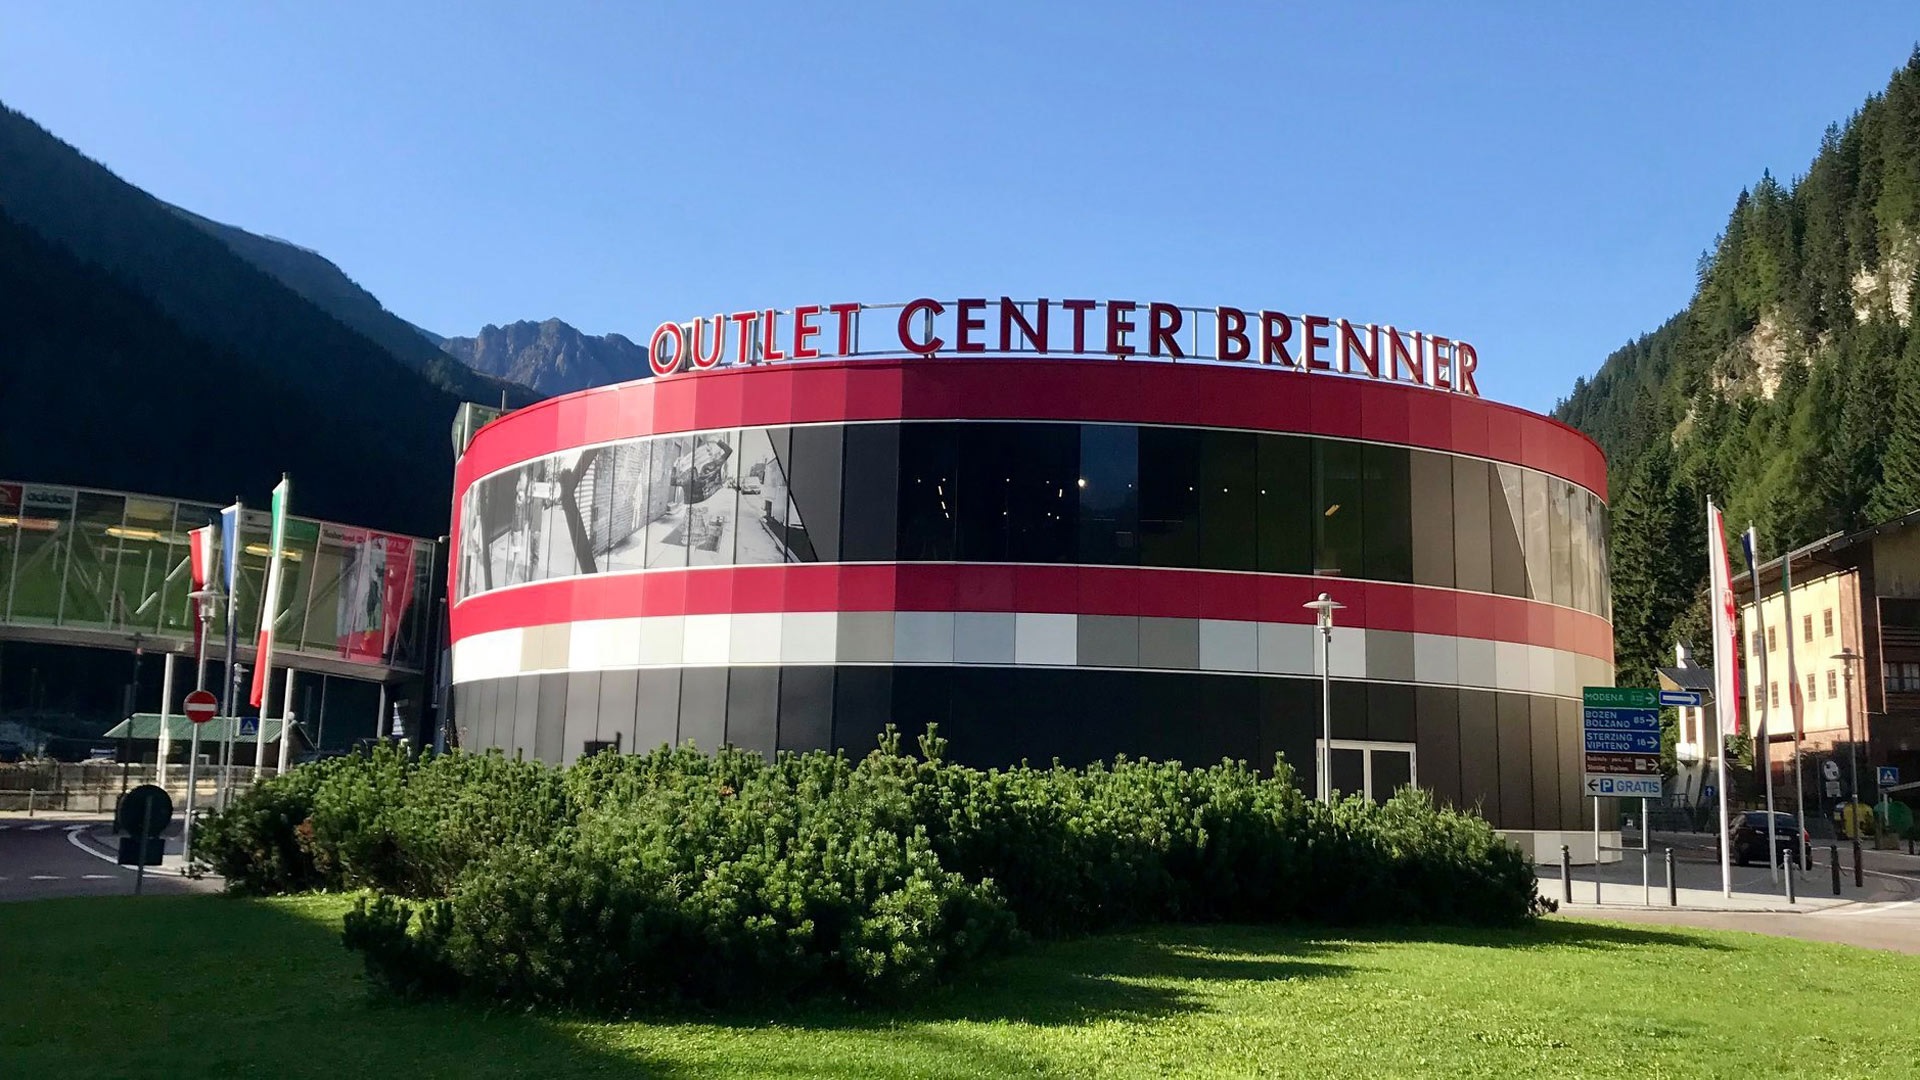 Outletcenter Brenner in der Nähe von Almi's Berghotel in Tirol